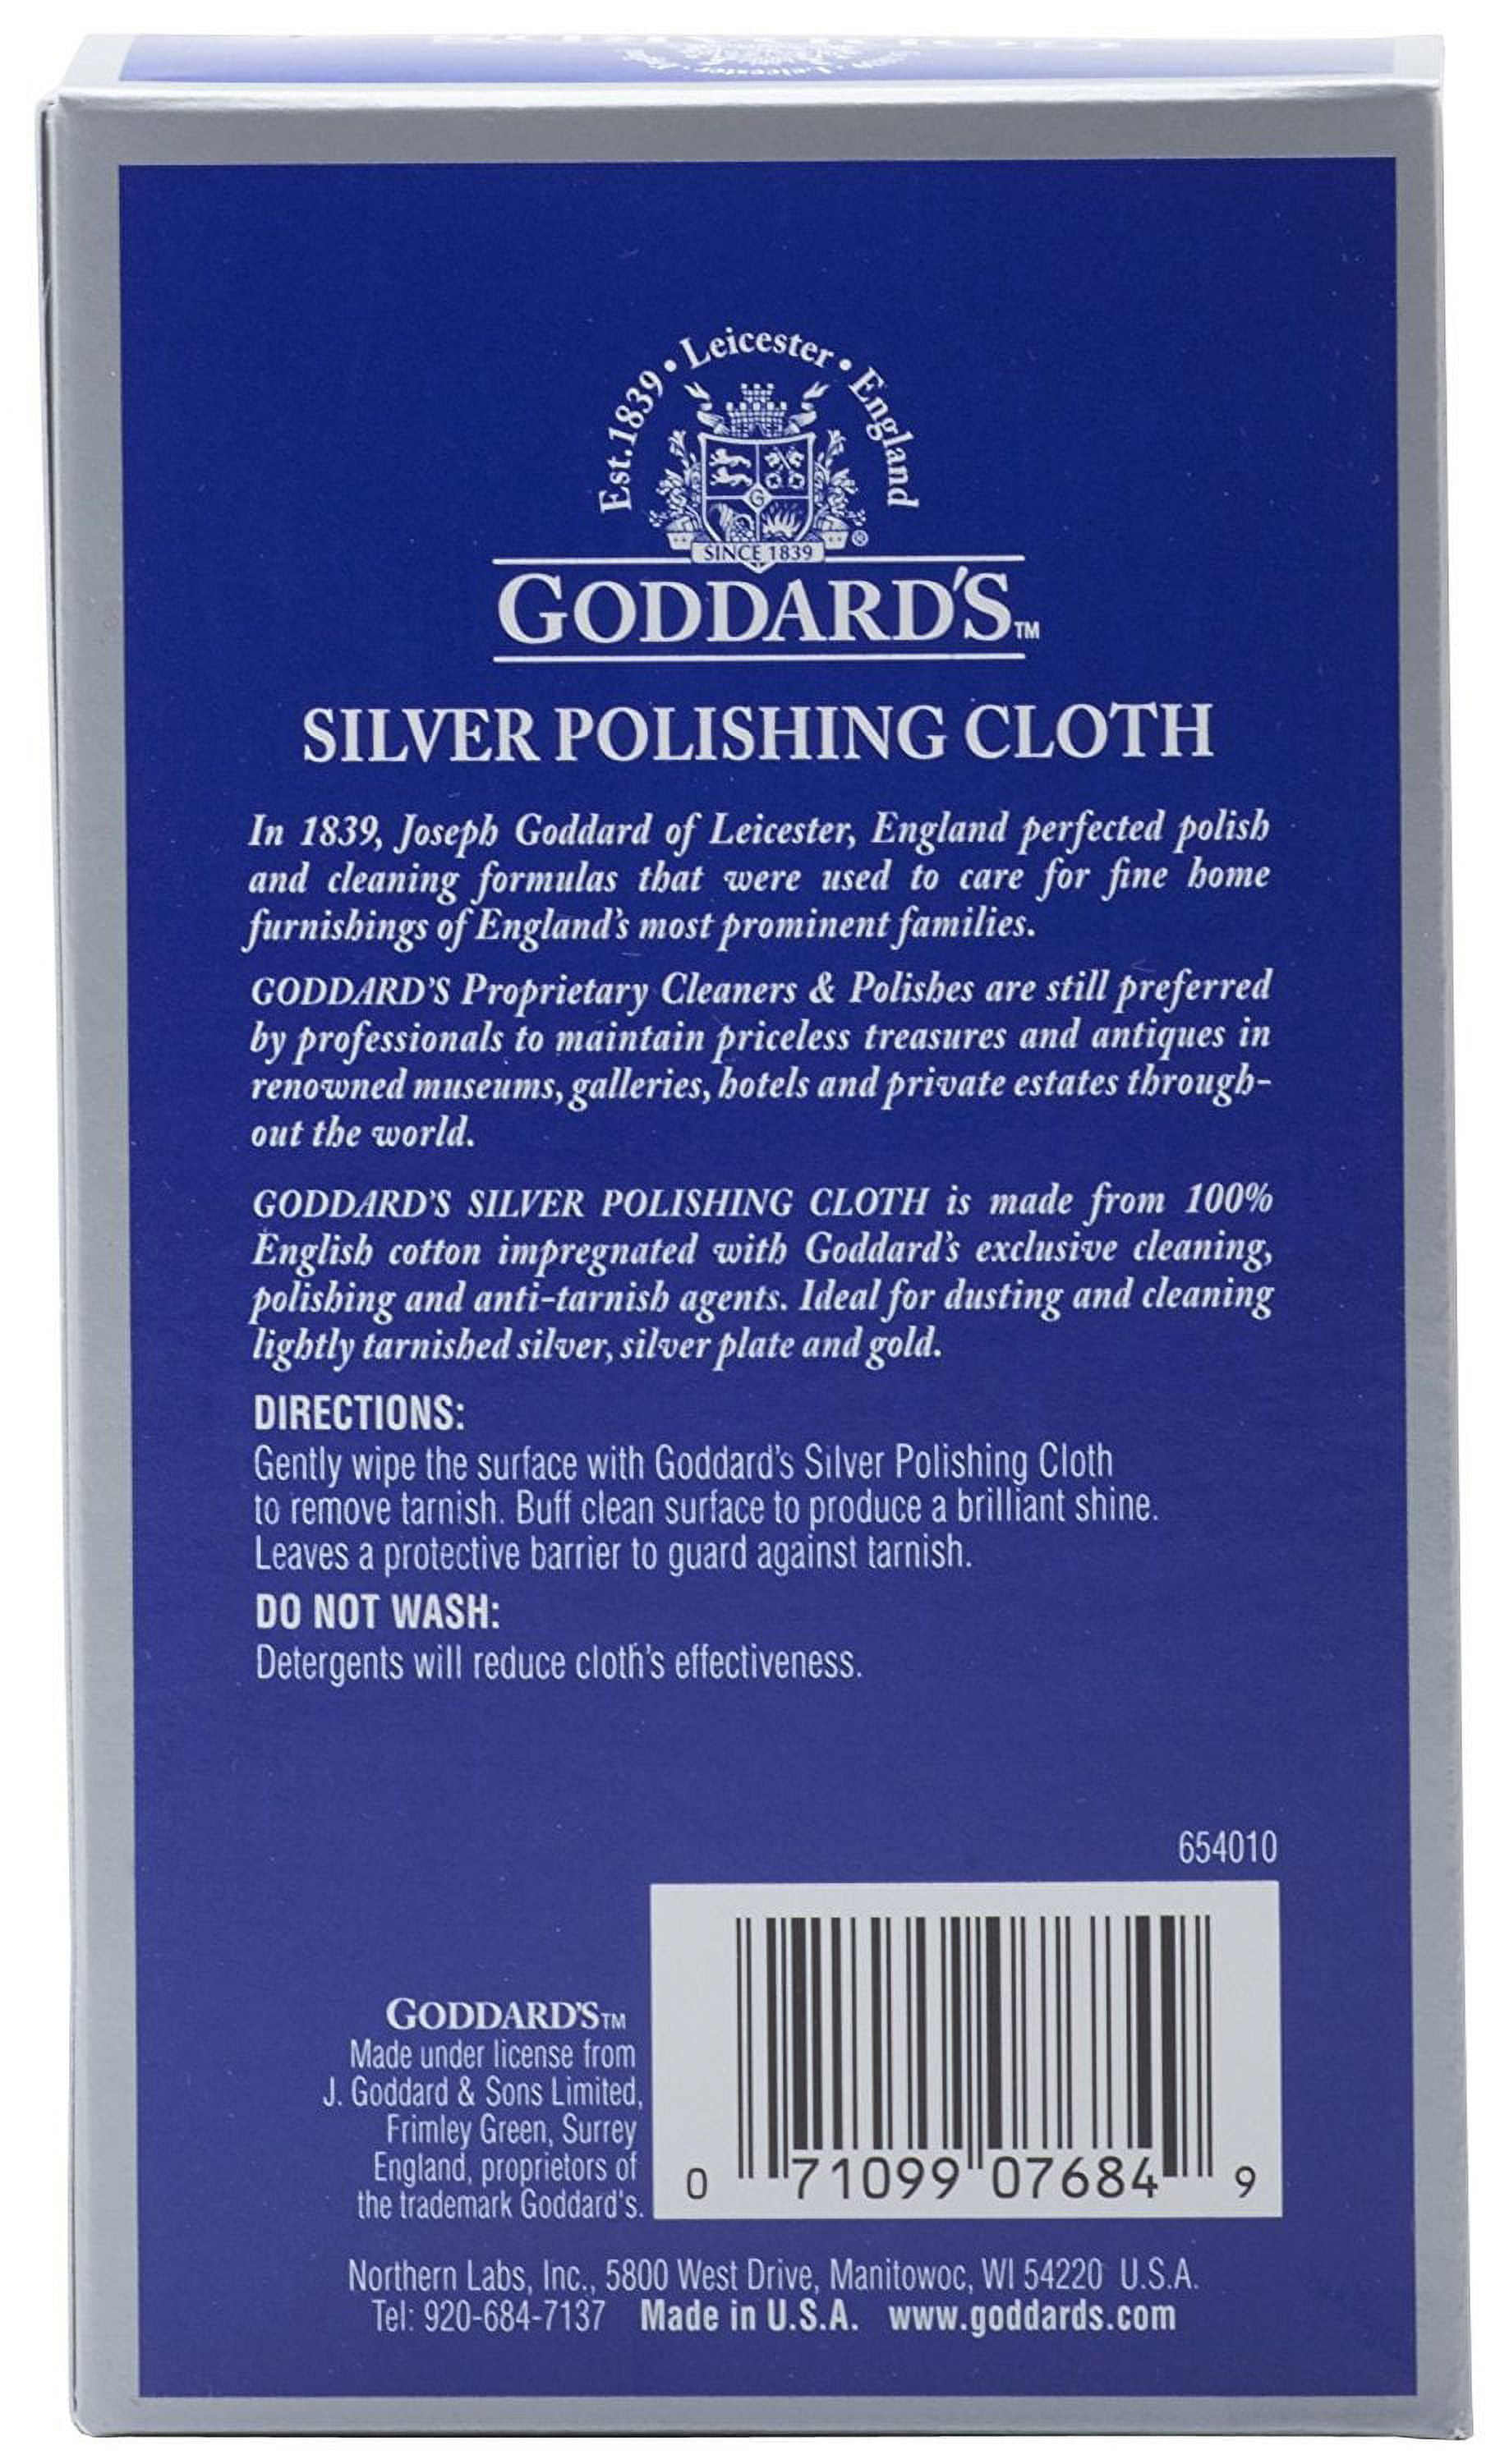 Goddards Silver Polish Cloth